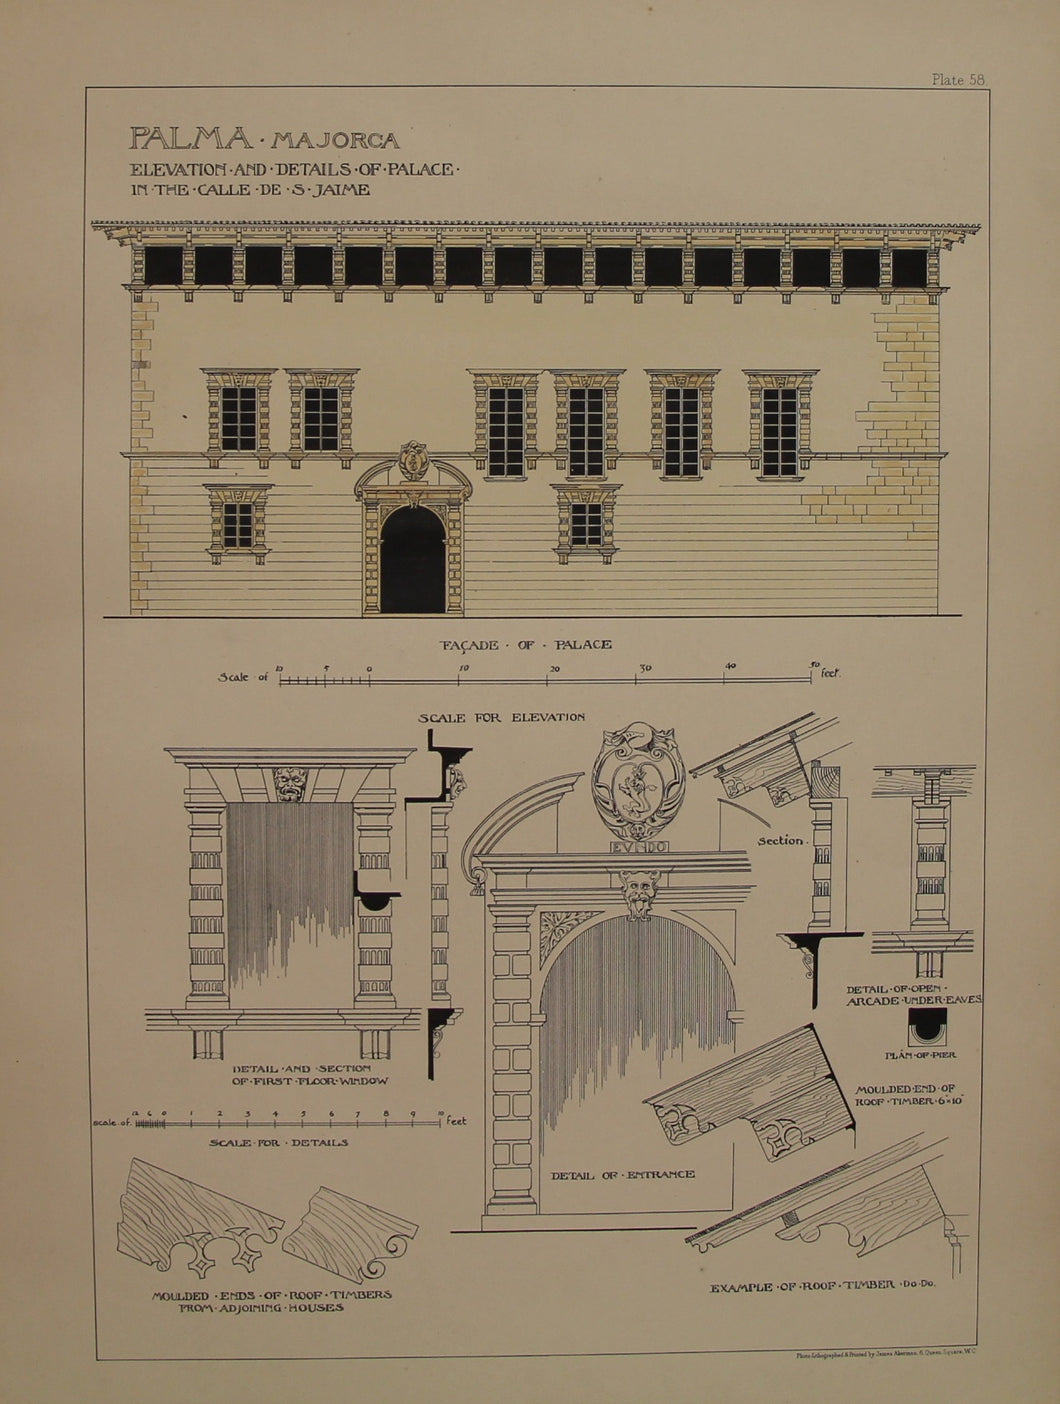 Architecture, Spanish Renaissance, Plate 58, Palma, Majorca, Details taken from the Palace of Calle De S Jaime, c1888